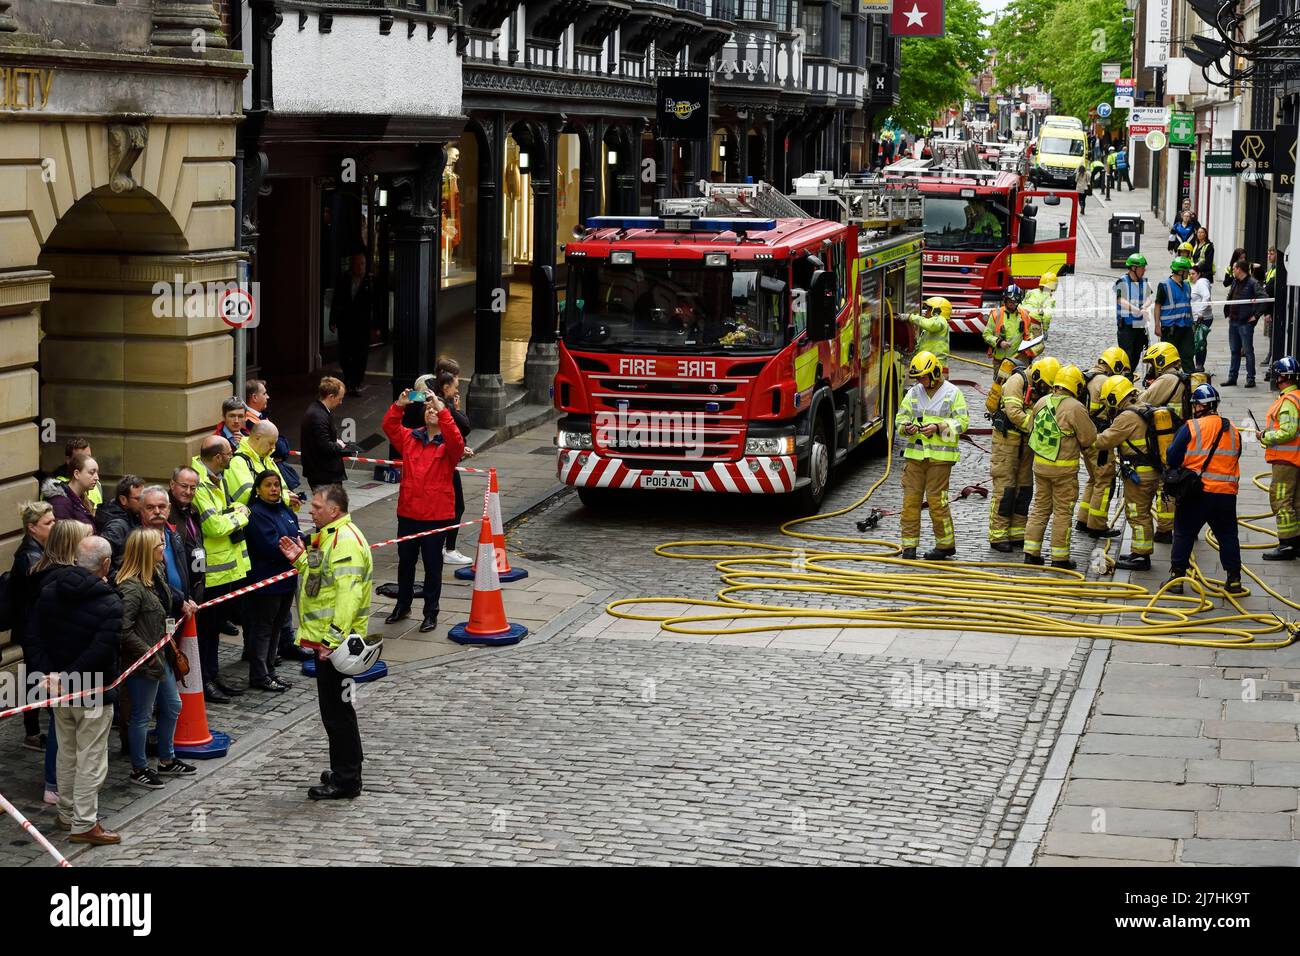 Die von Cheshire Fire and Rescue Service geleitete Multi-Agenturschulung von Deva Flame findet im Nachtclub Rosies in der Northgate Street Chester UK statt Stockfoto